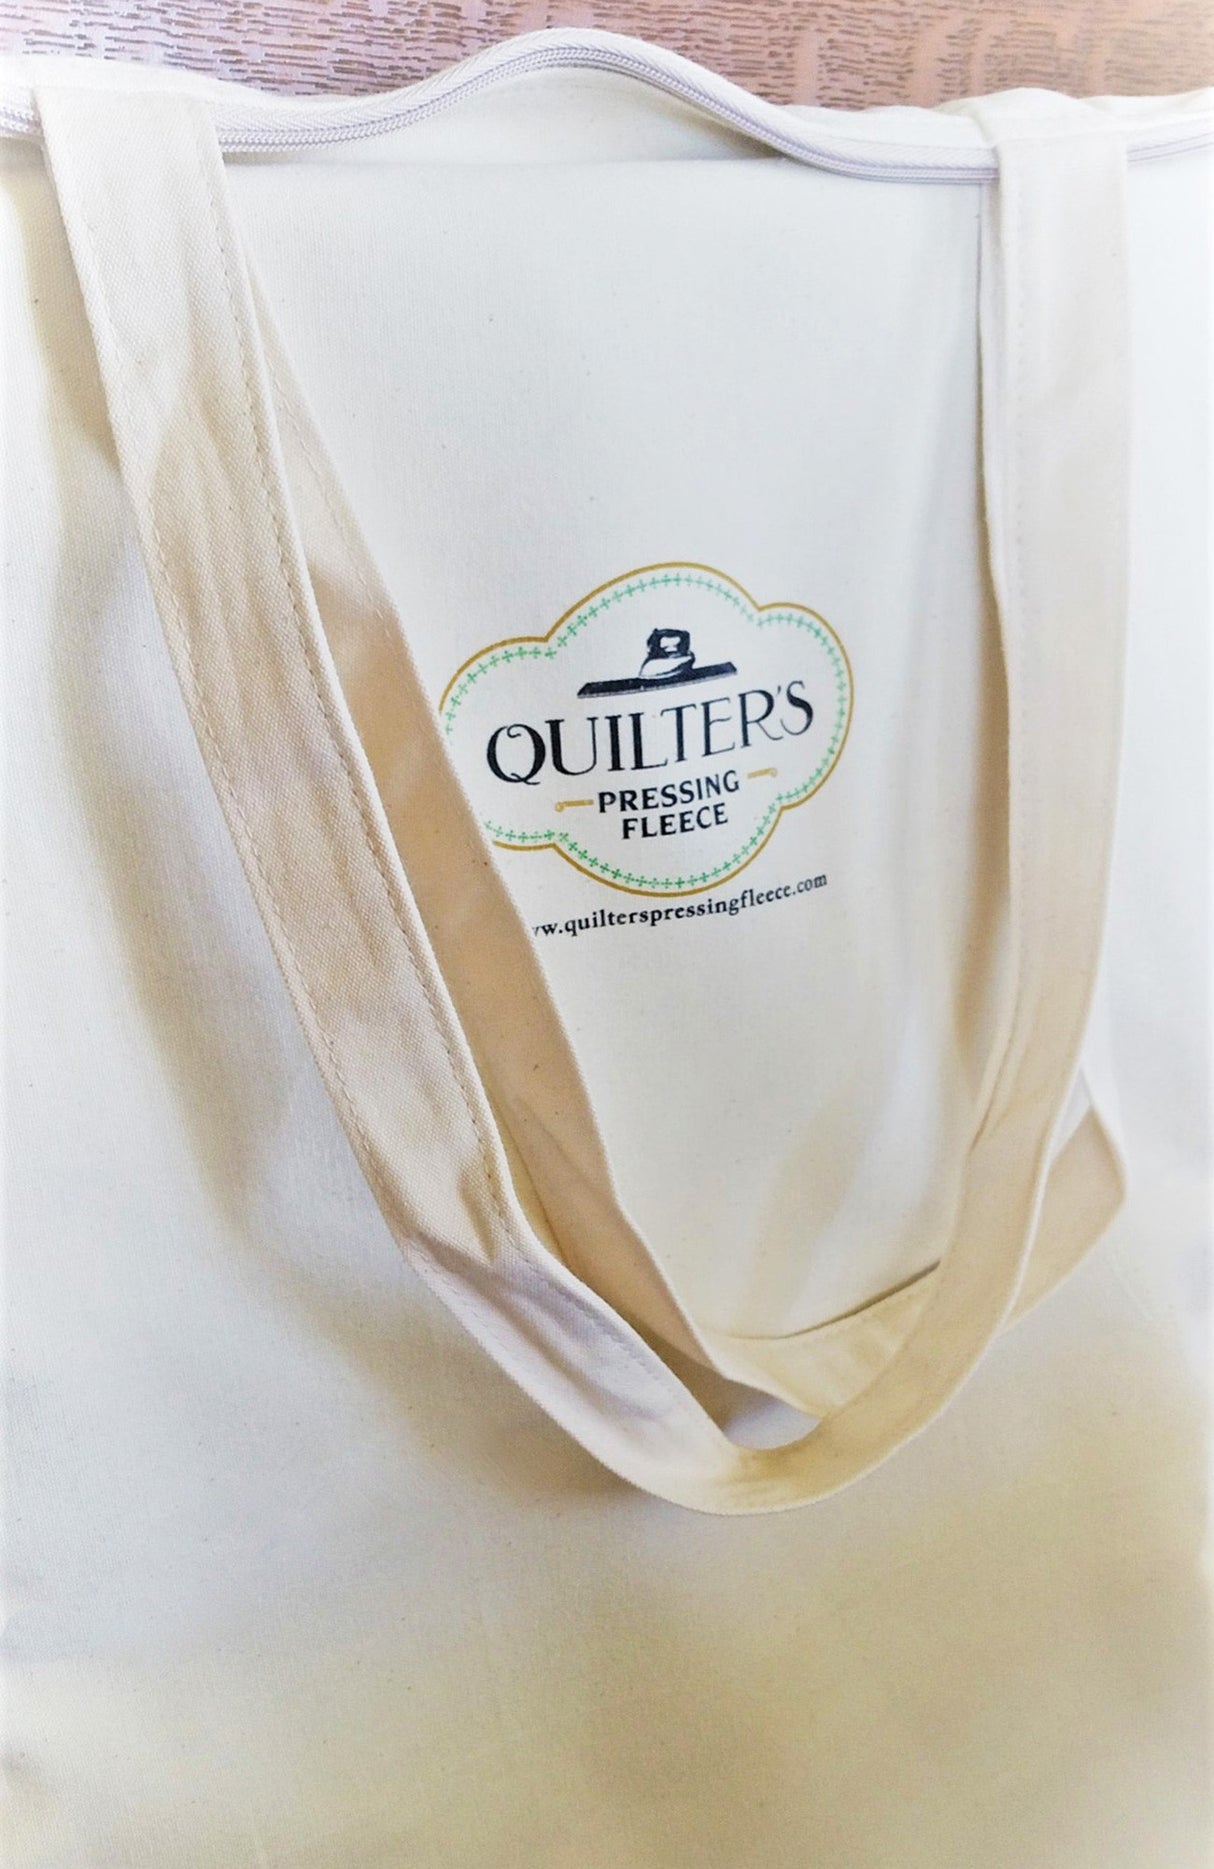 Quilter's Pressing Fleece